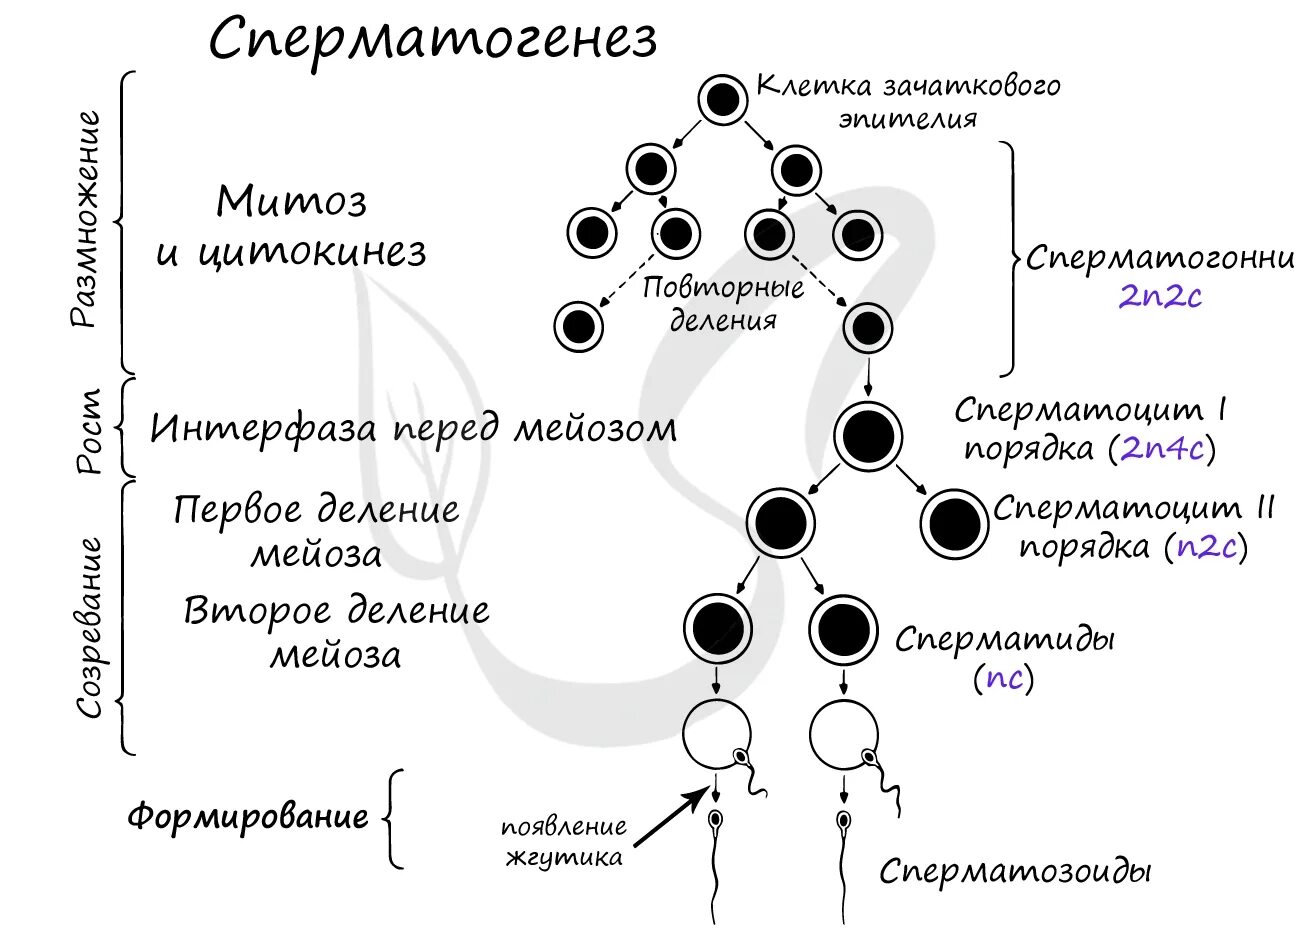 2. Гаметогенез. Сперматогенез. Фаза созревания сперматогенеза. Фаза размножения сперматогенеза. Схема процесса сперматогенеза.